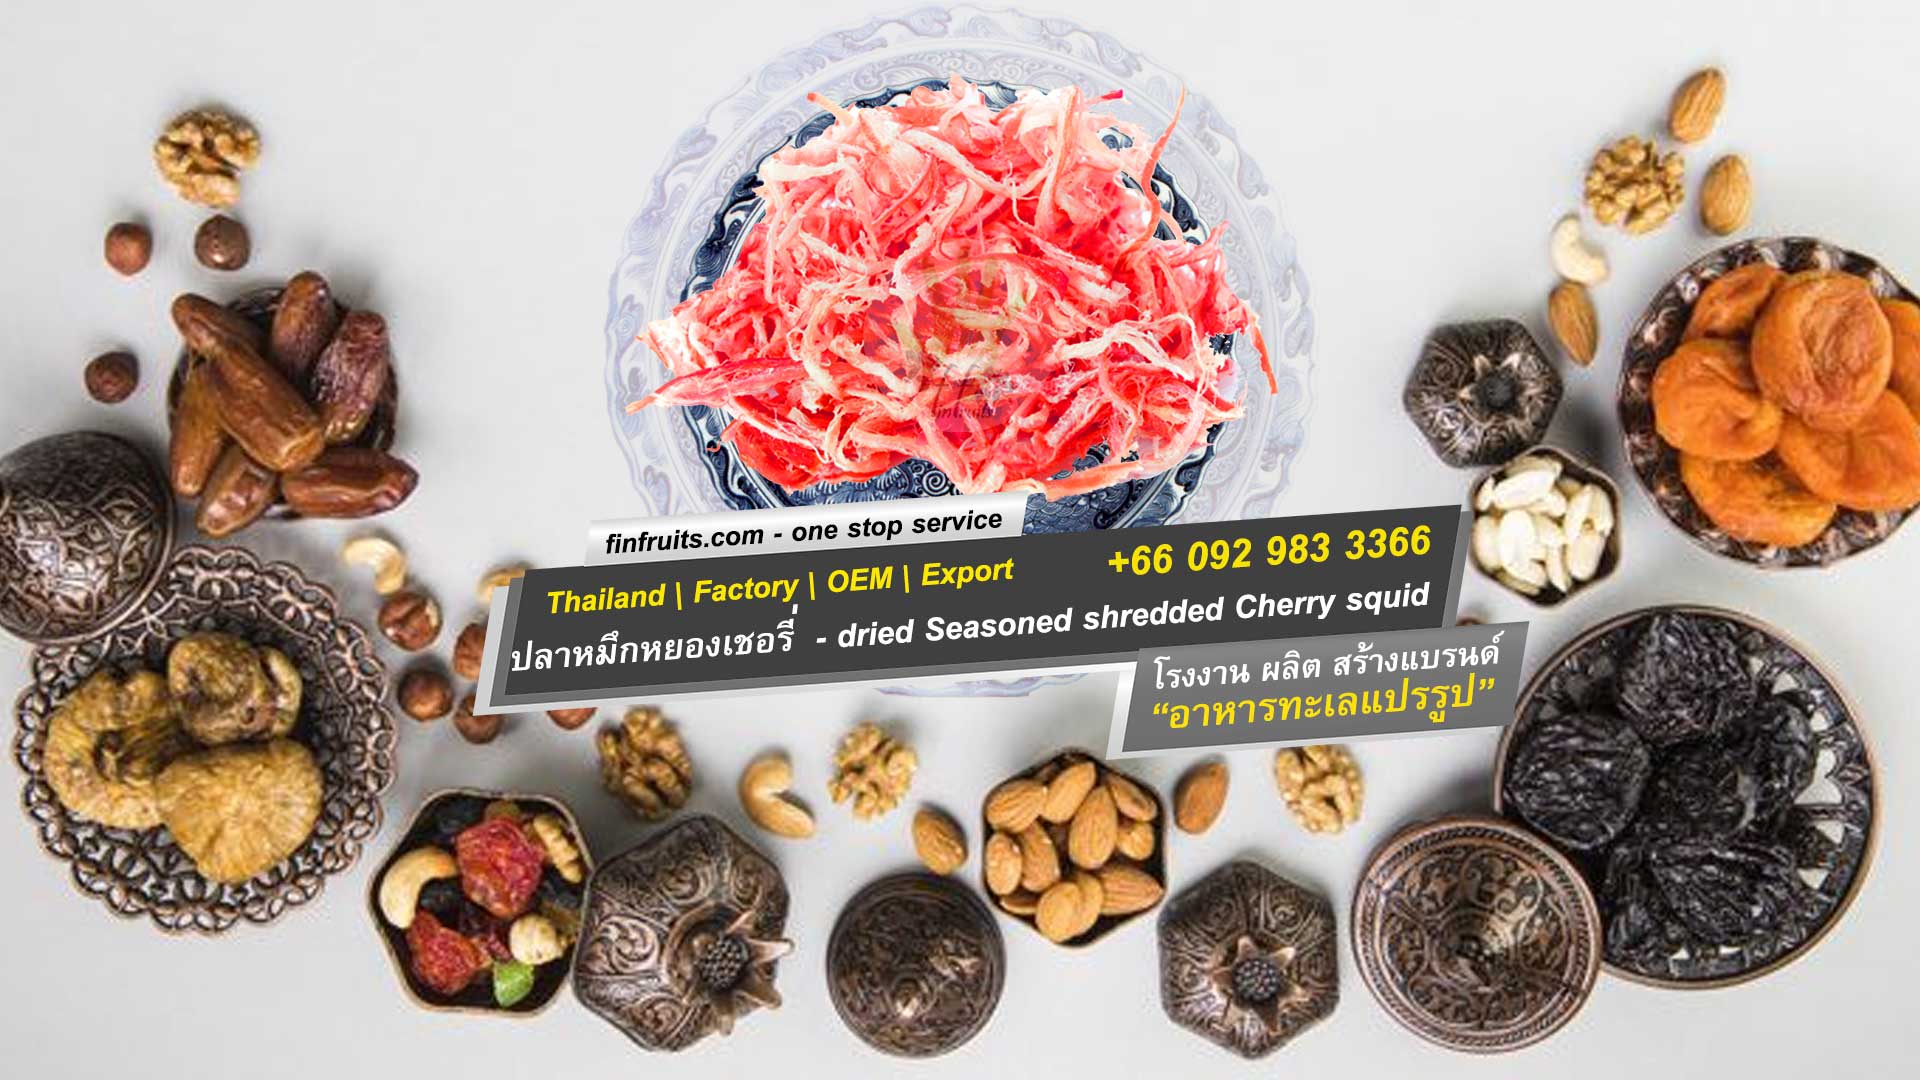 อาหาร ทะเลแห้ง ปลาหมึกหยองเชอรี่ Dried cherry seasoned shredded squid (Processed) ขาย|ขายส่ง|ตัวแทน|โรงงาน|ผลิต|oem ตลาด มหาชัย|มหานาค|เพชรบุรี